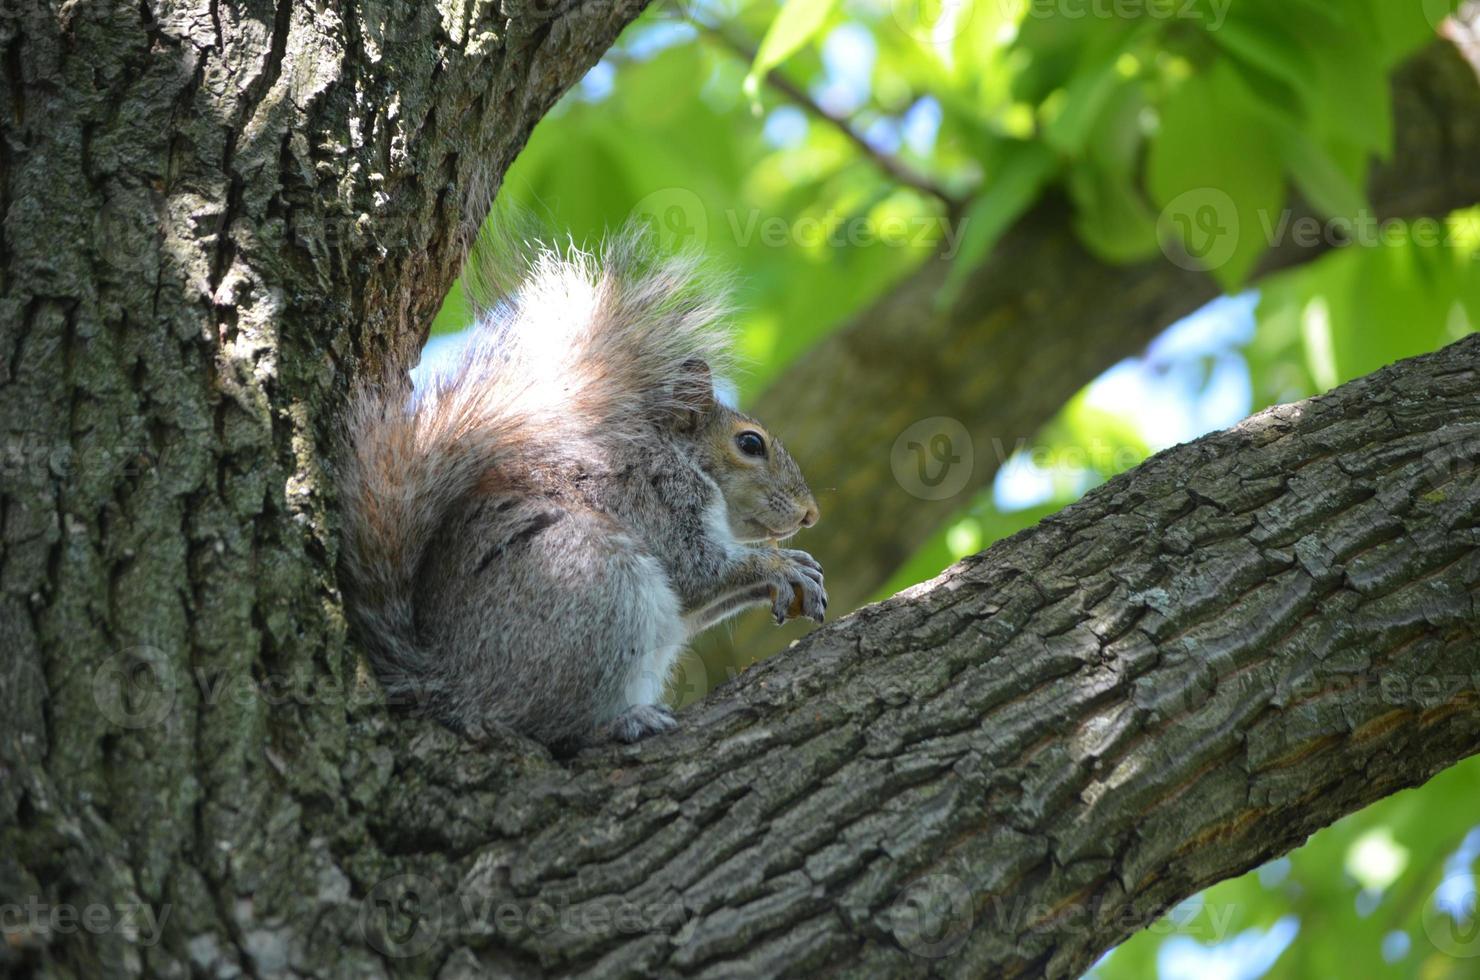 schönes Eichhörnchen, das in einem Baum sitzt foto